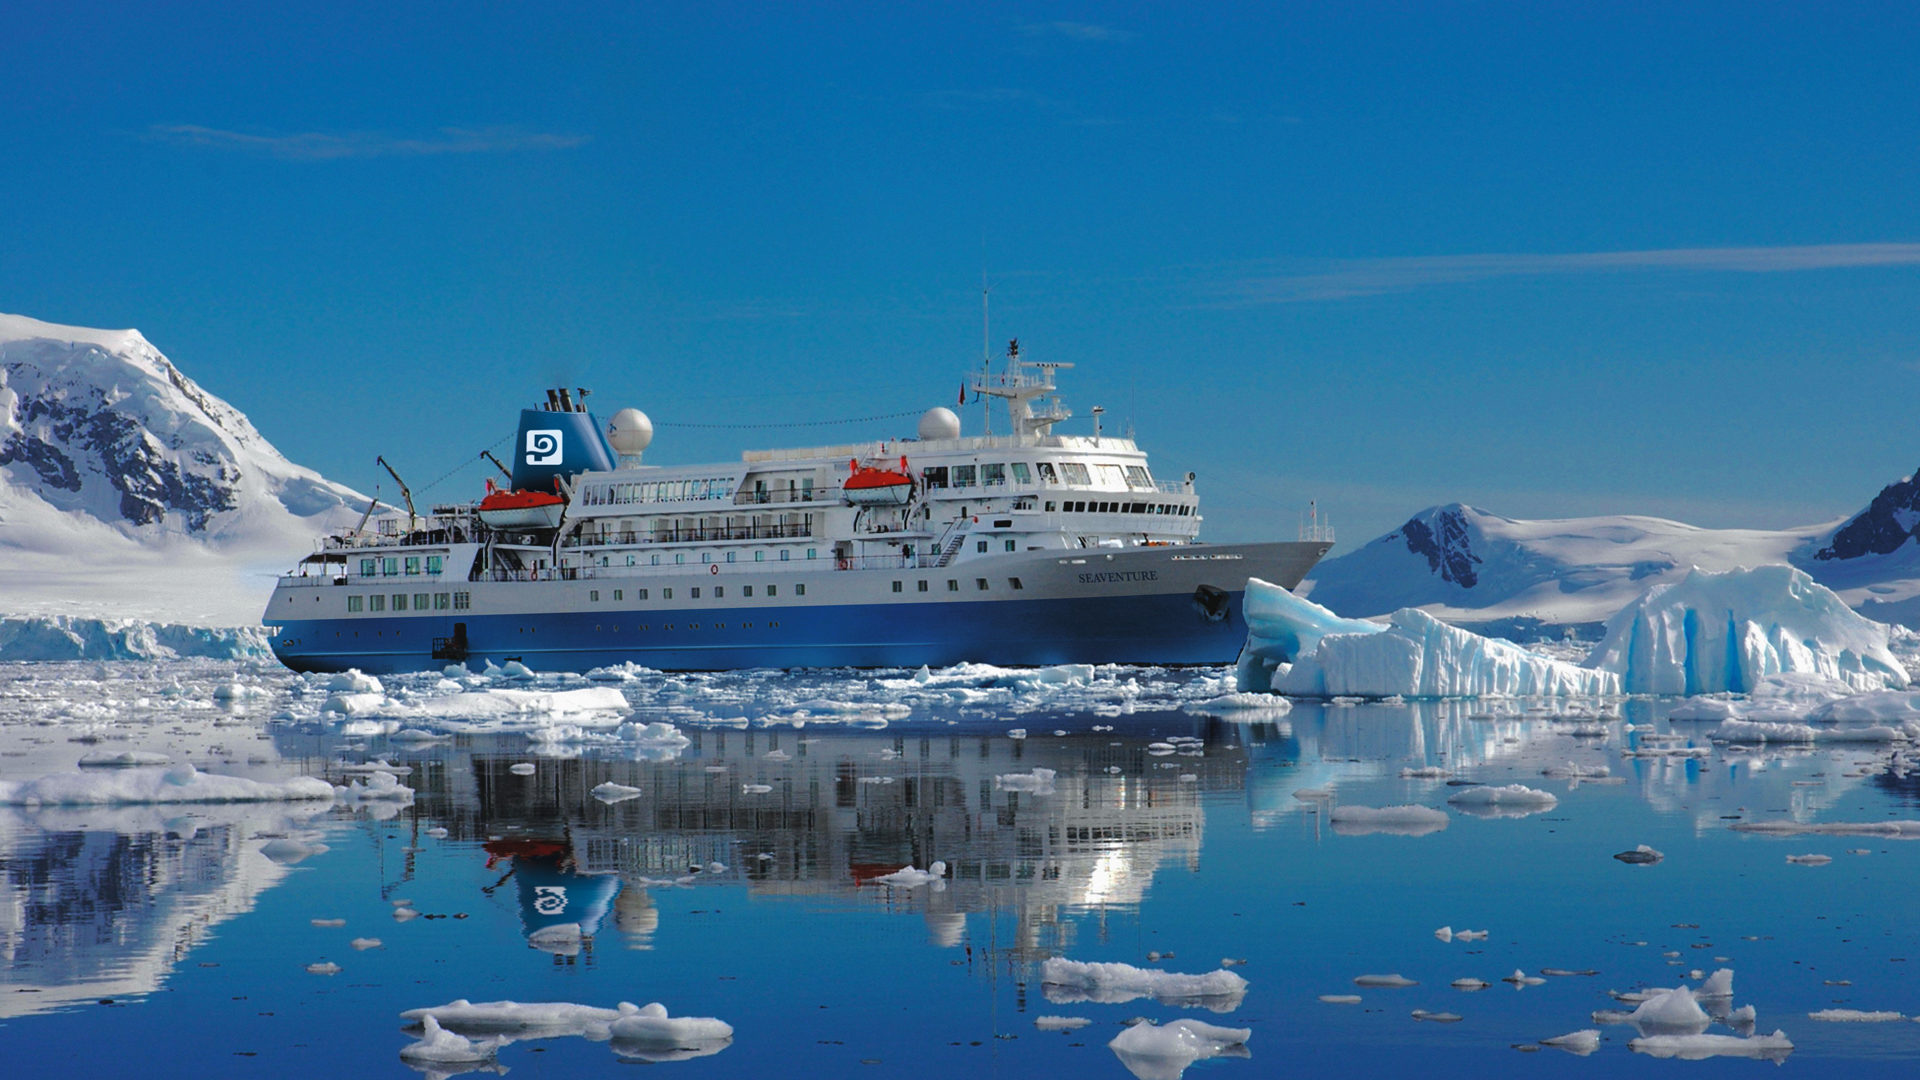 Polar Latitudes MS Seaventure